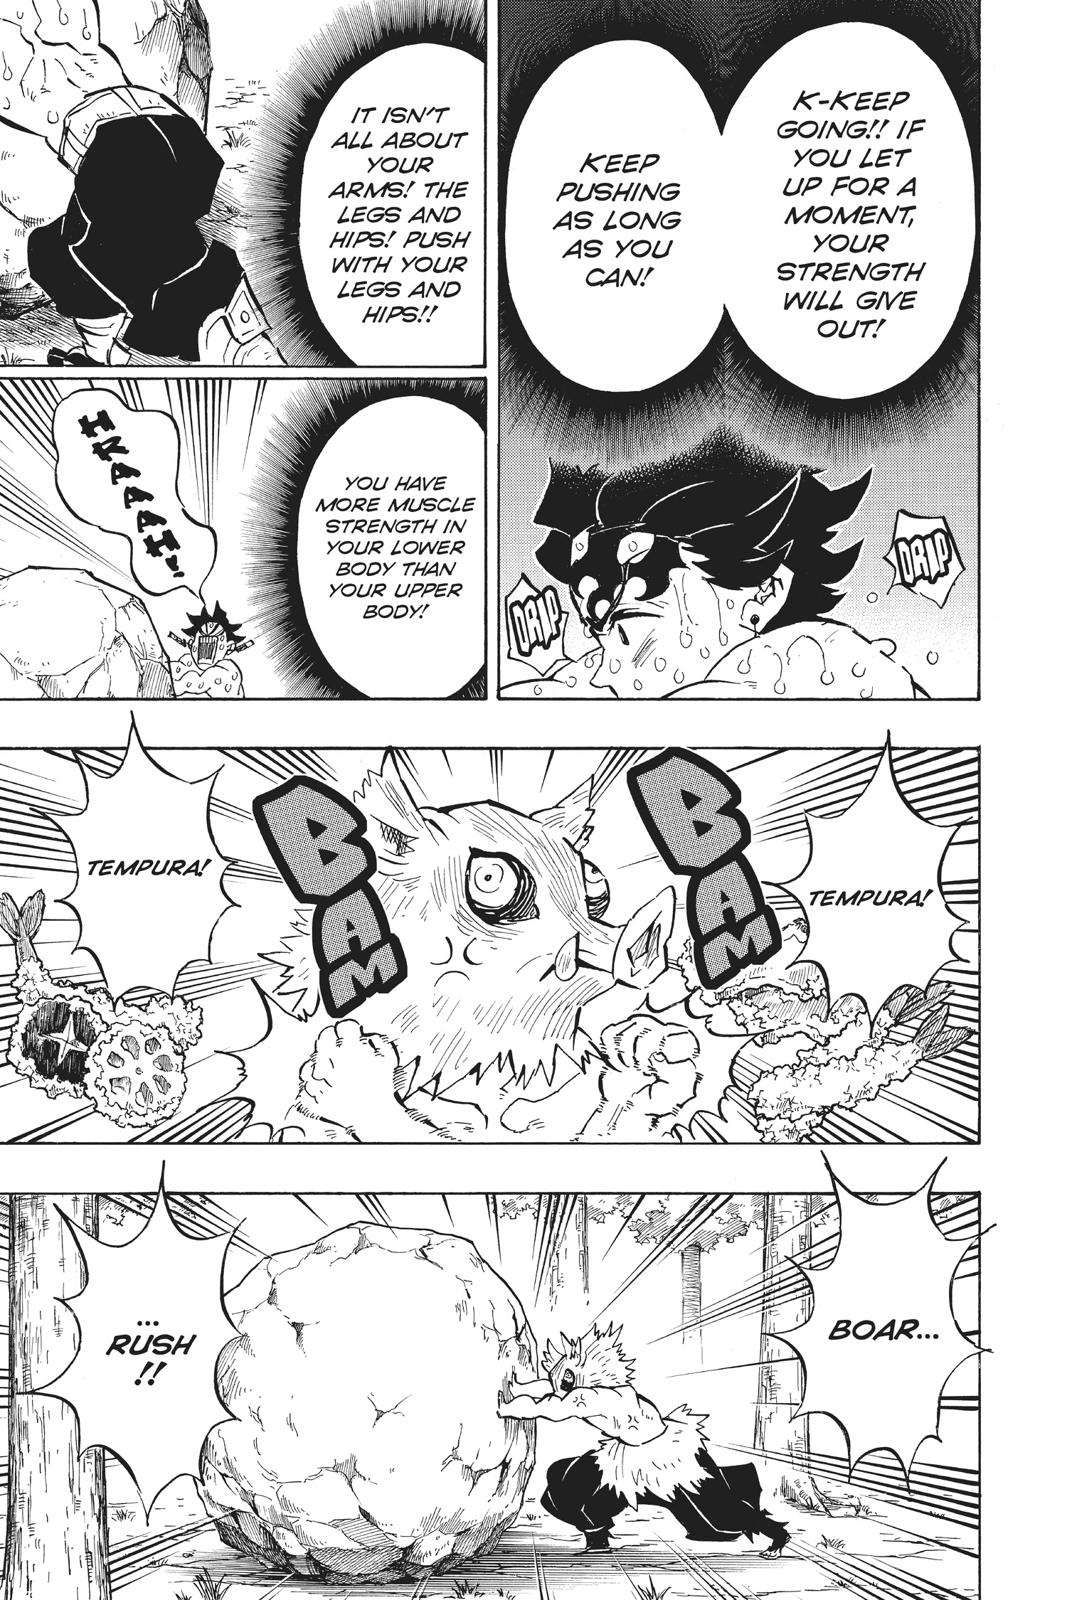 Demon Slayer Manga Manga Chapter - 135 - image 4